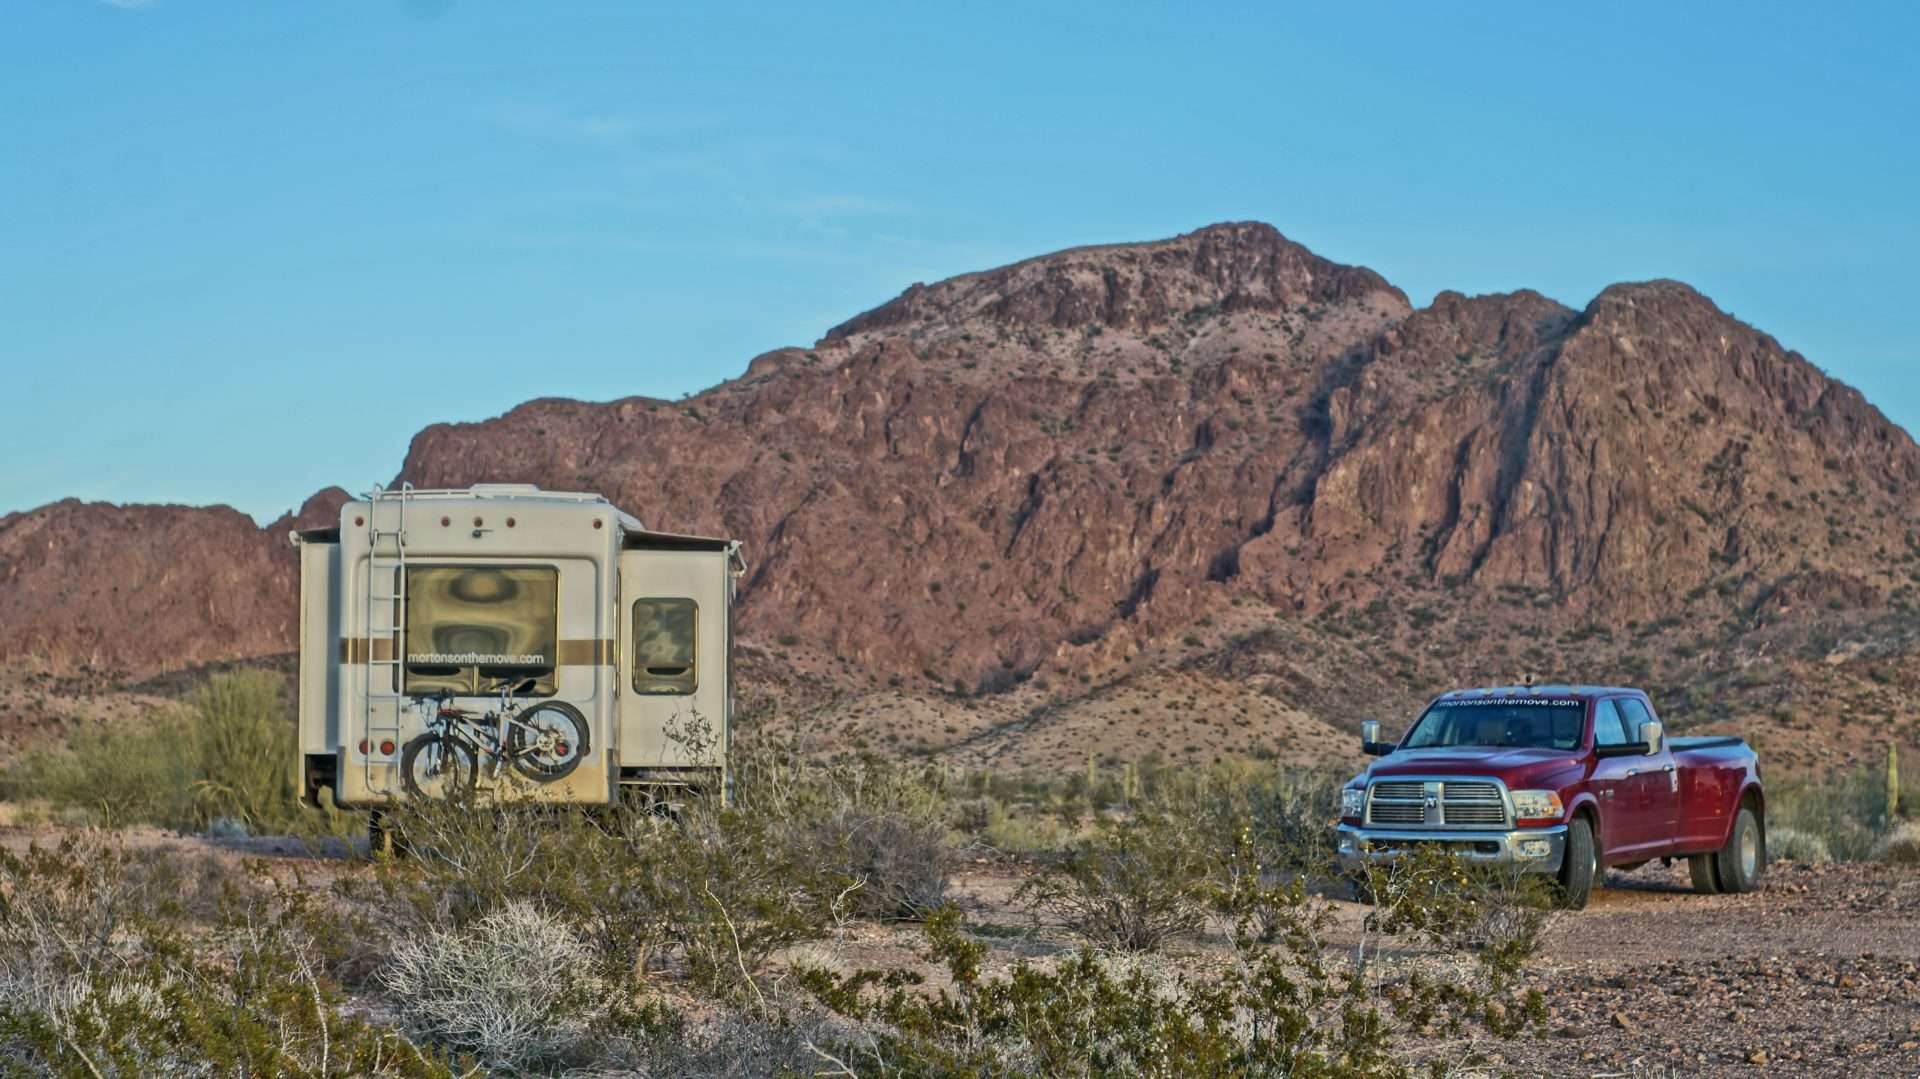 Camping in desert southwest